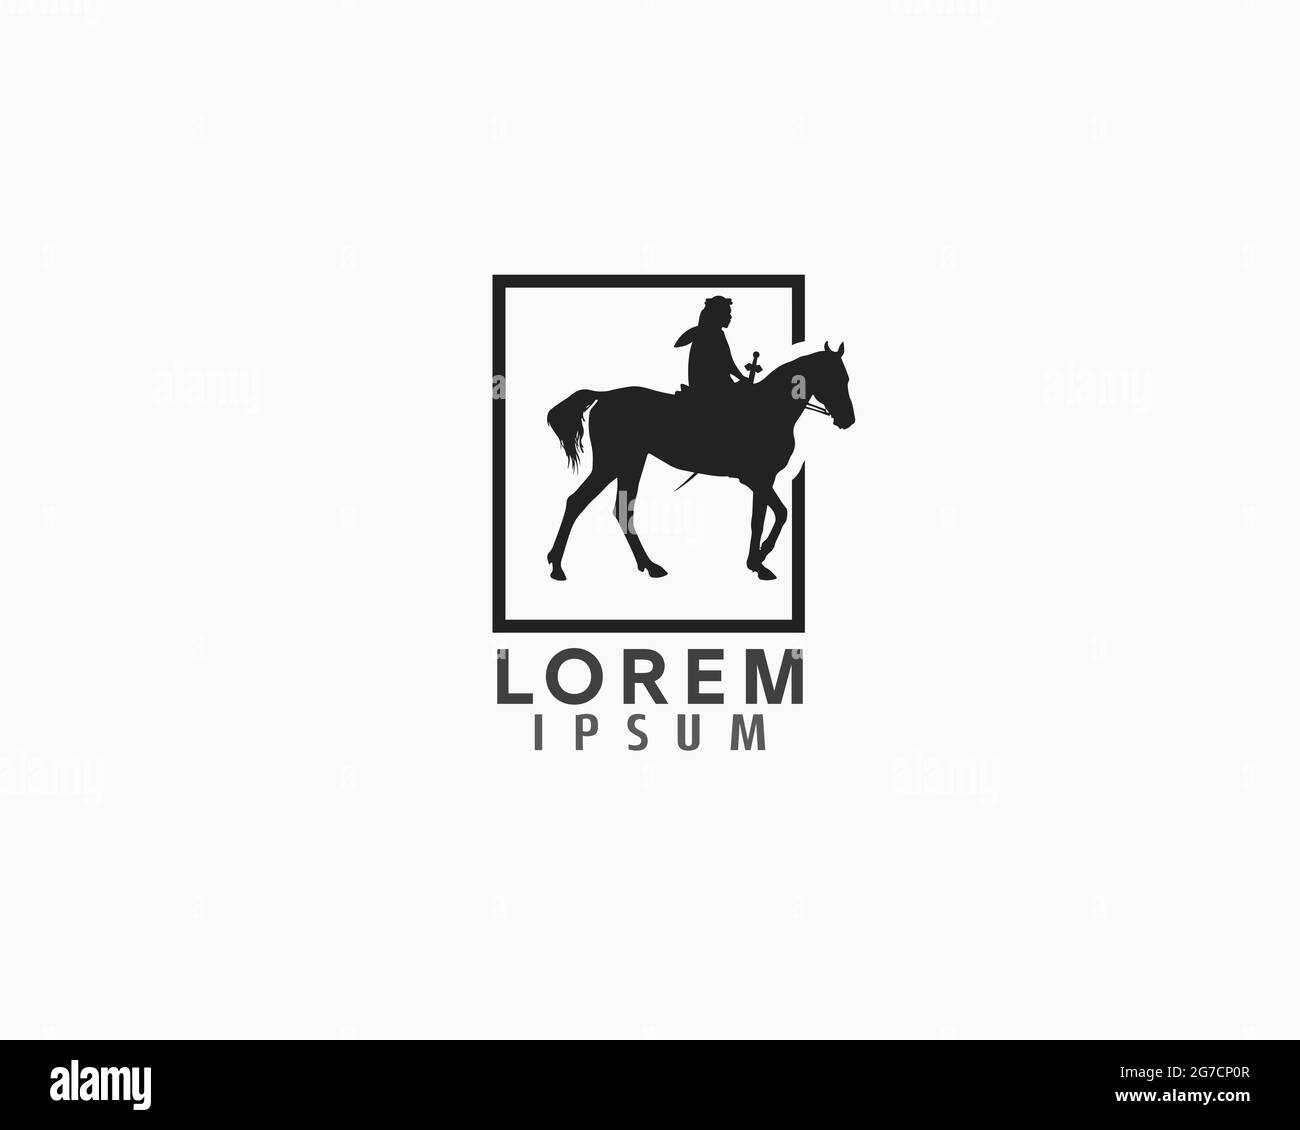 il design del logo del cavallo da equitazione può essere utilizzato come segno, icona o simbolo, vettore a strati completi e facile da modificare e personalizzare dimensioni e colori, compatibile con gli almos Illustrazione Vettoriale